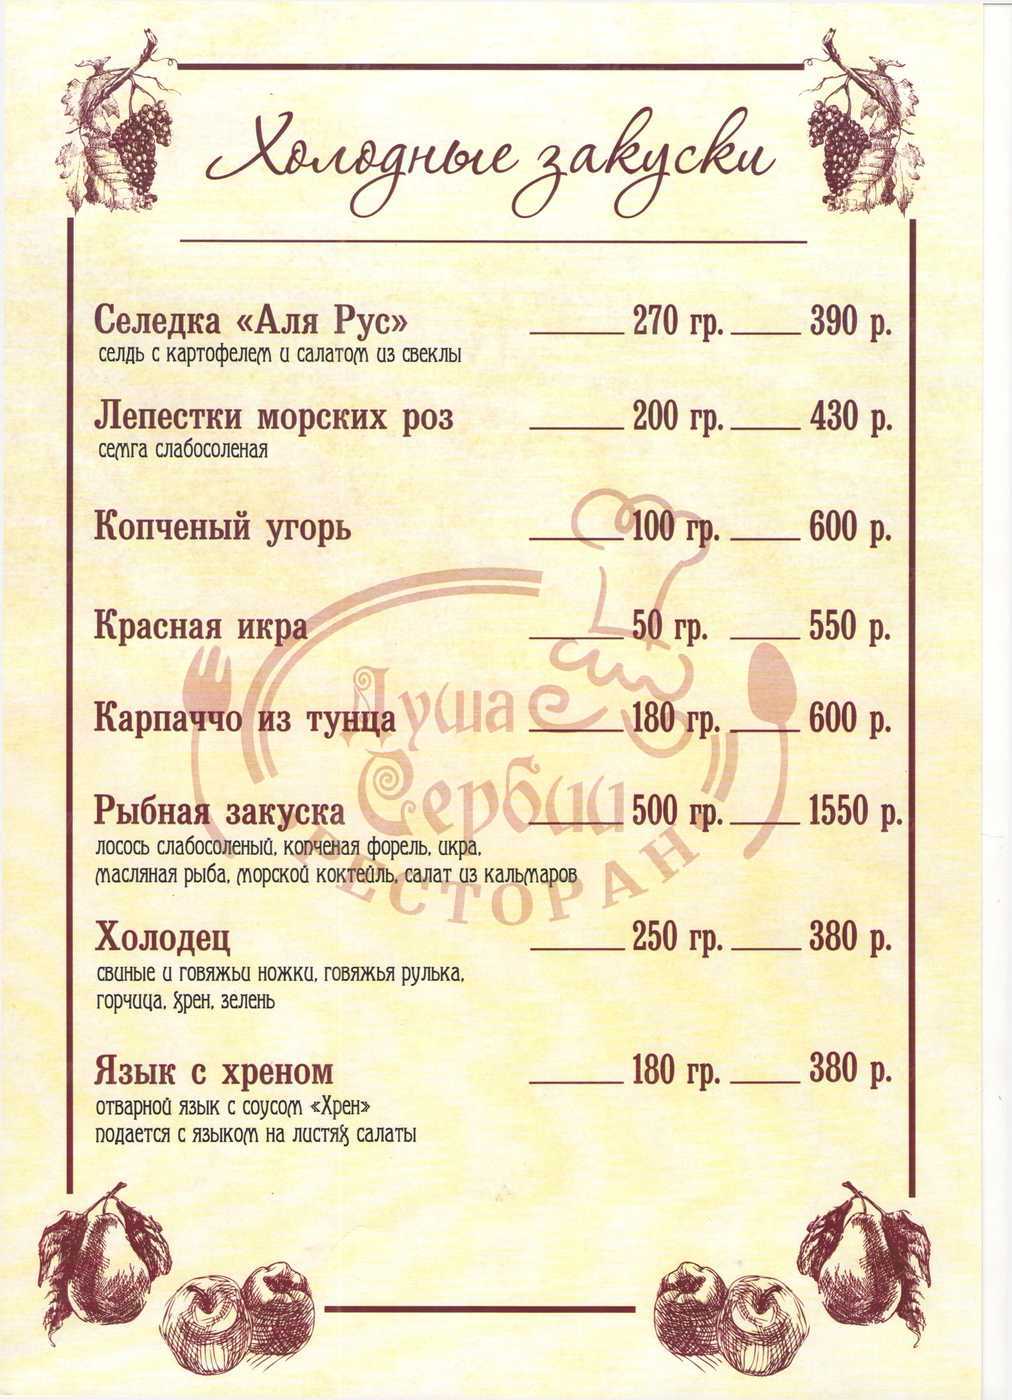 Меню и цены ресторана Душа Сербии в уле. Отто Шмидта фото 4